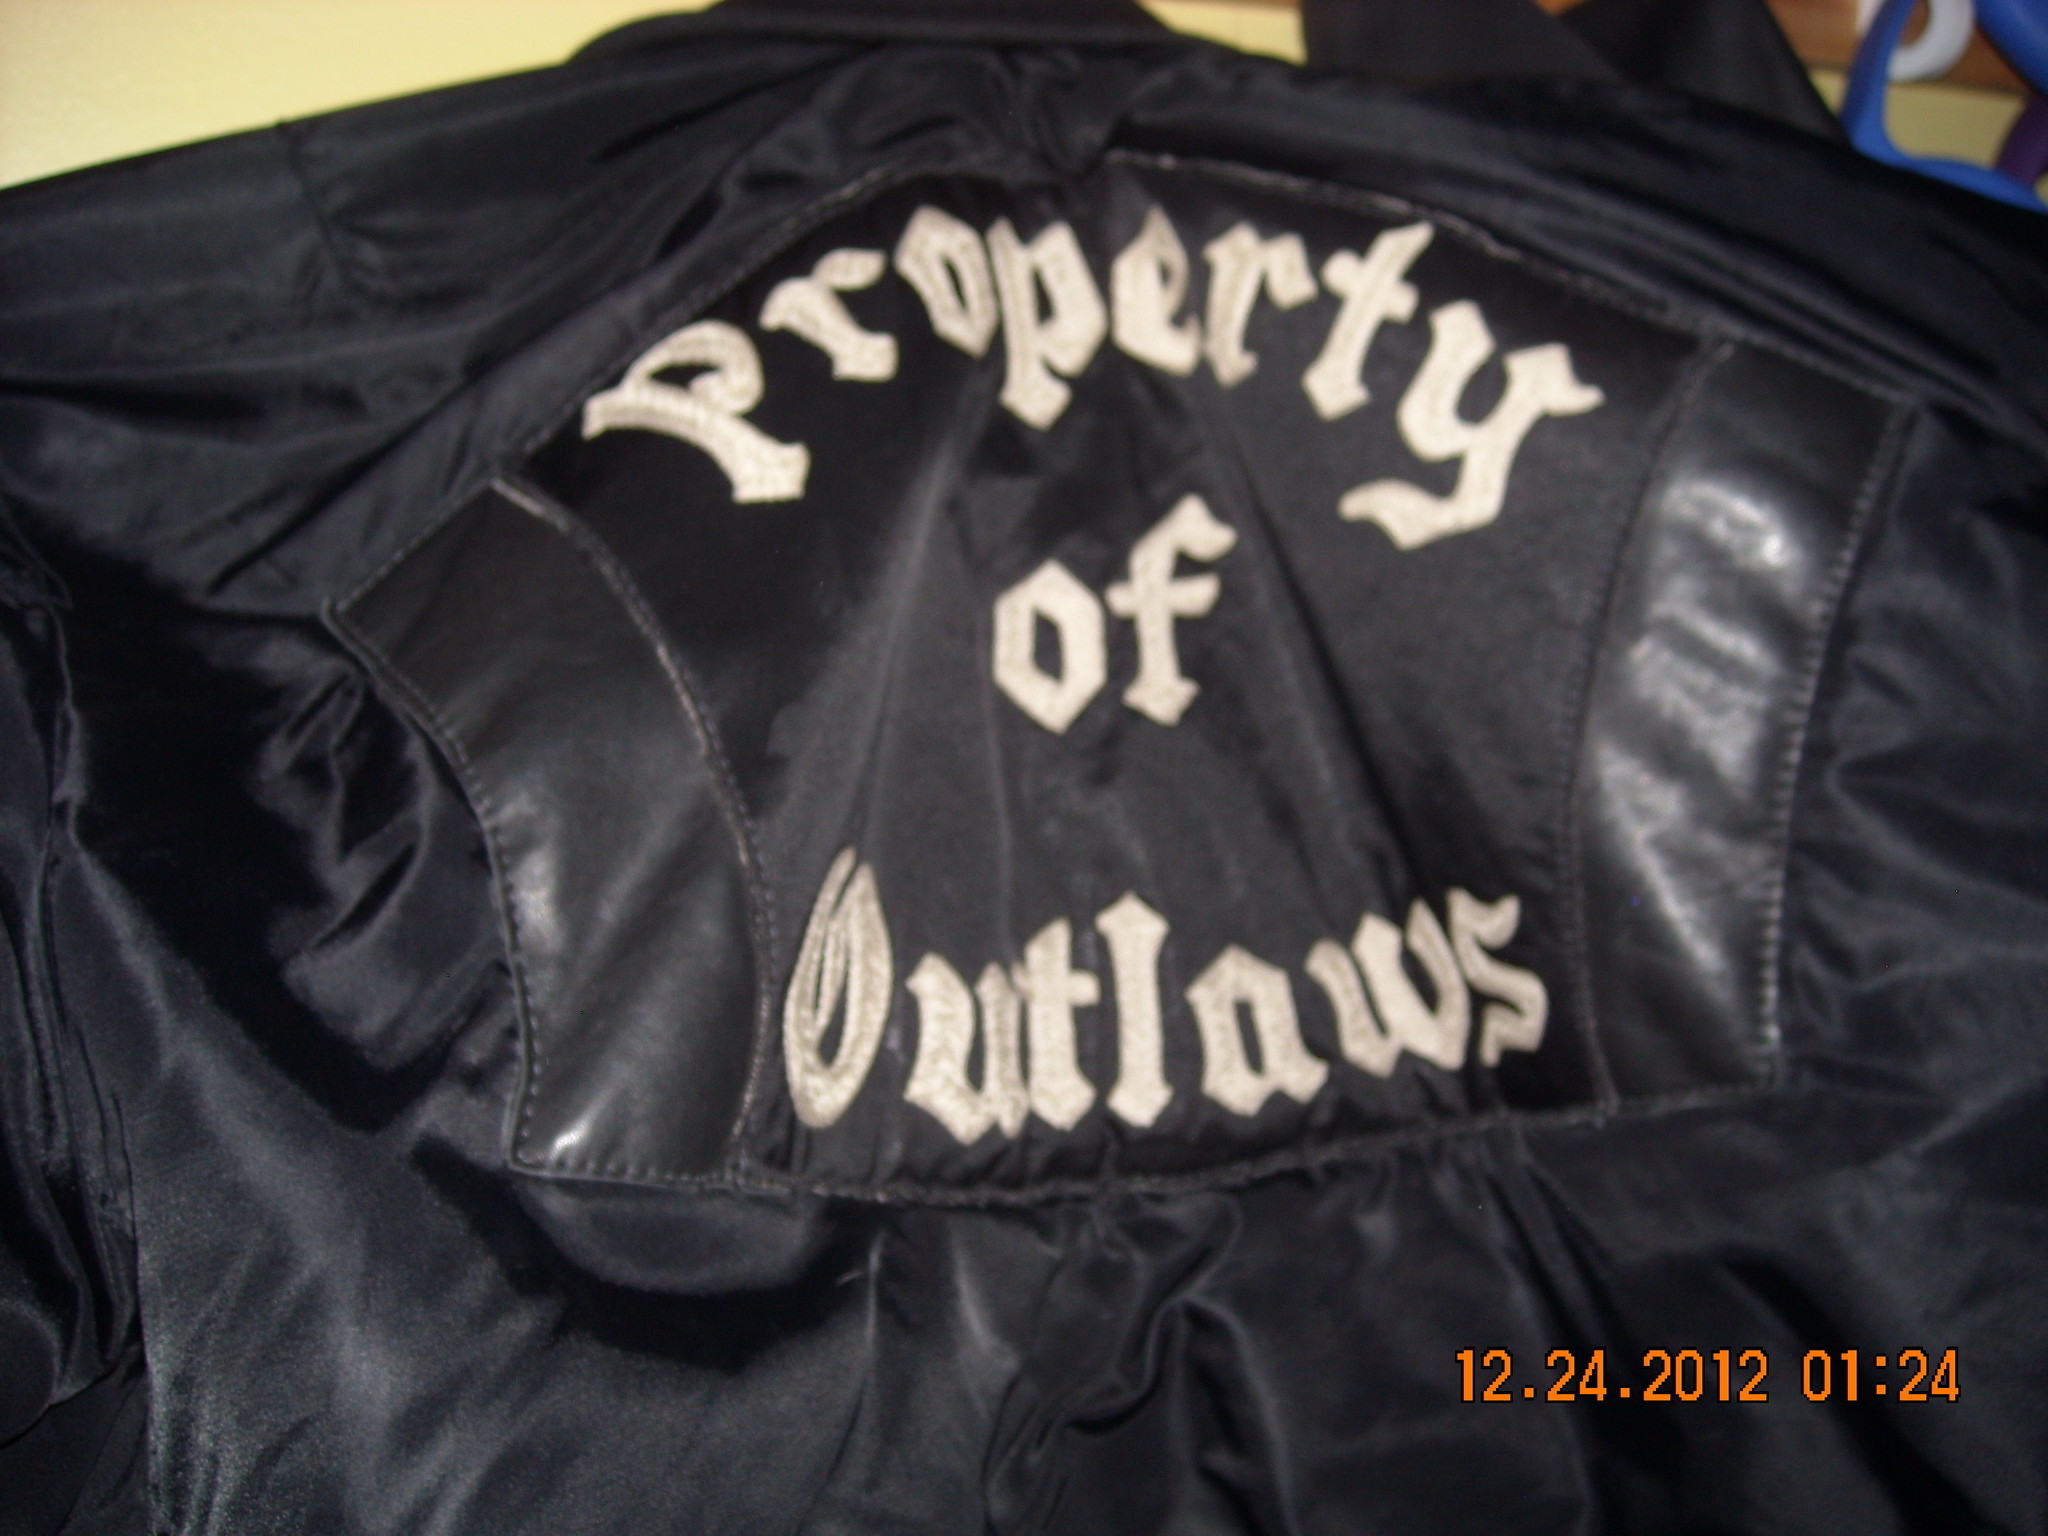 2048x1536 Judge says Outlaws biker group won't get vests, badges back after bar brawl  - Chicago Tribune